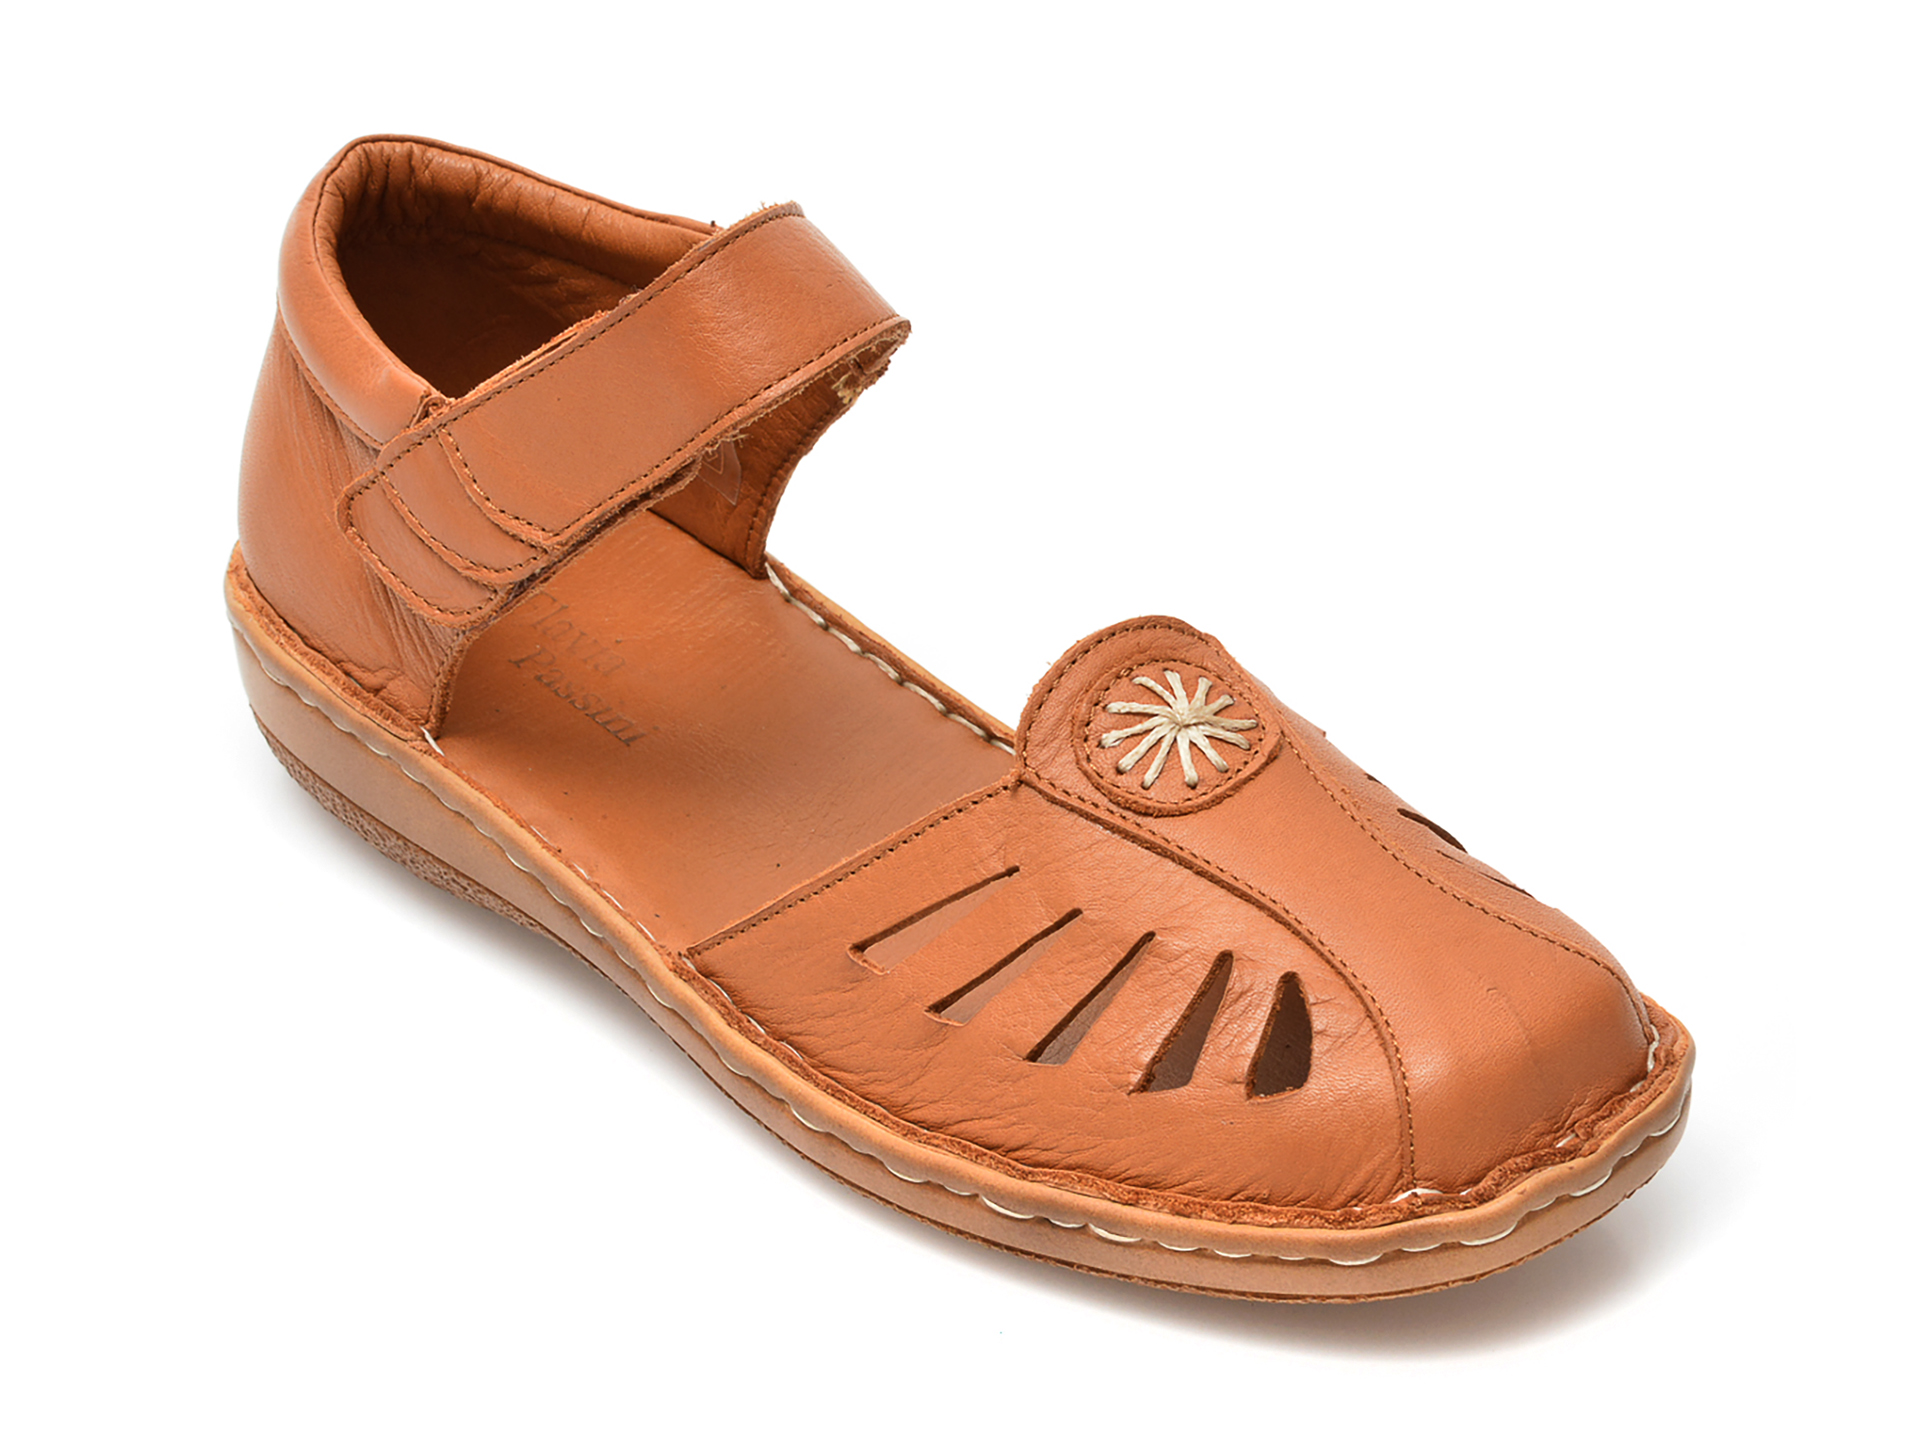 Pantofi FLAVIA PASSINI maro, 56, din piele naturala Flavia Passini